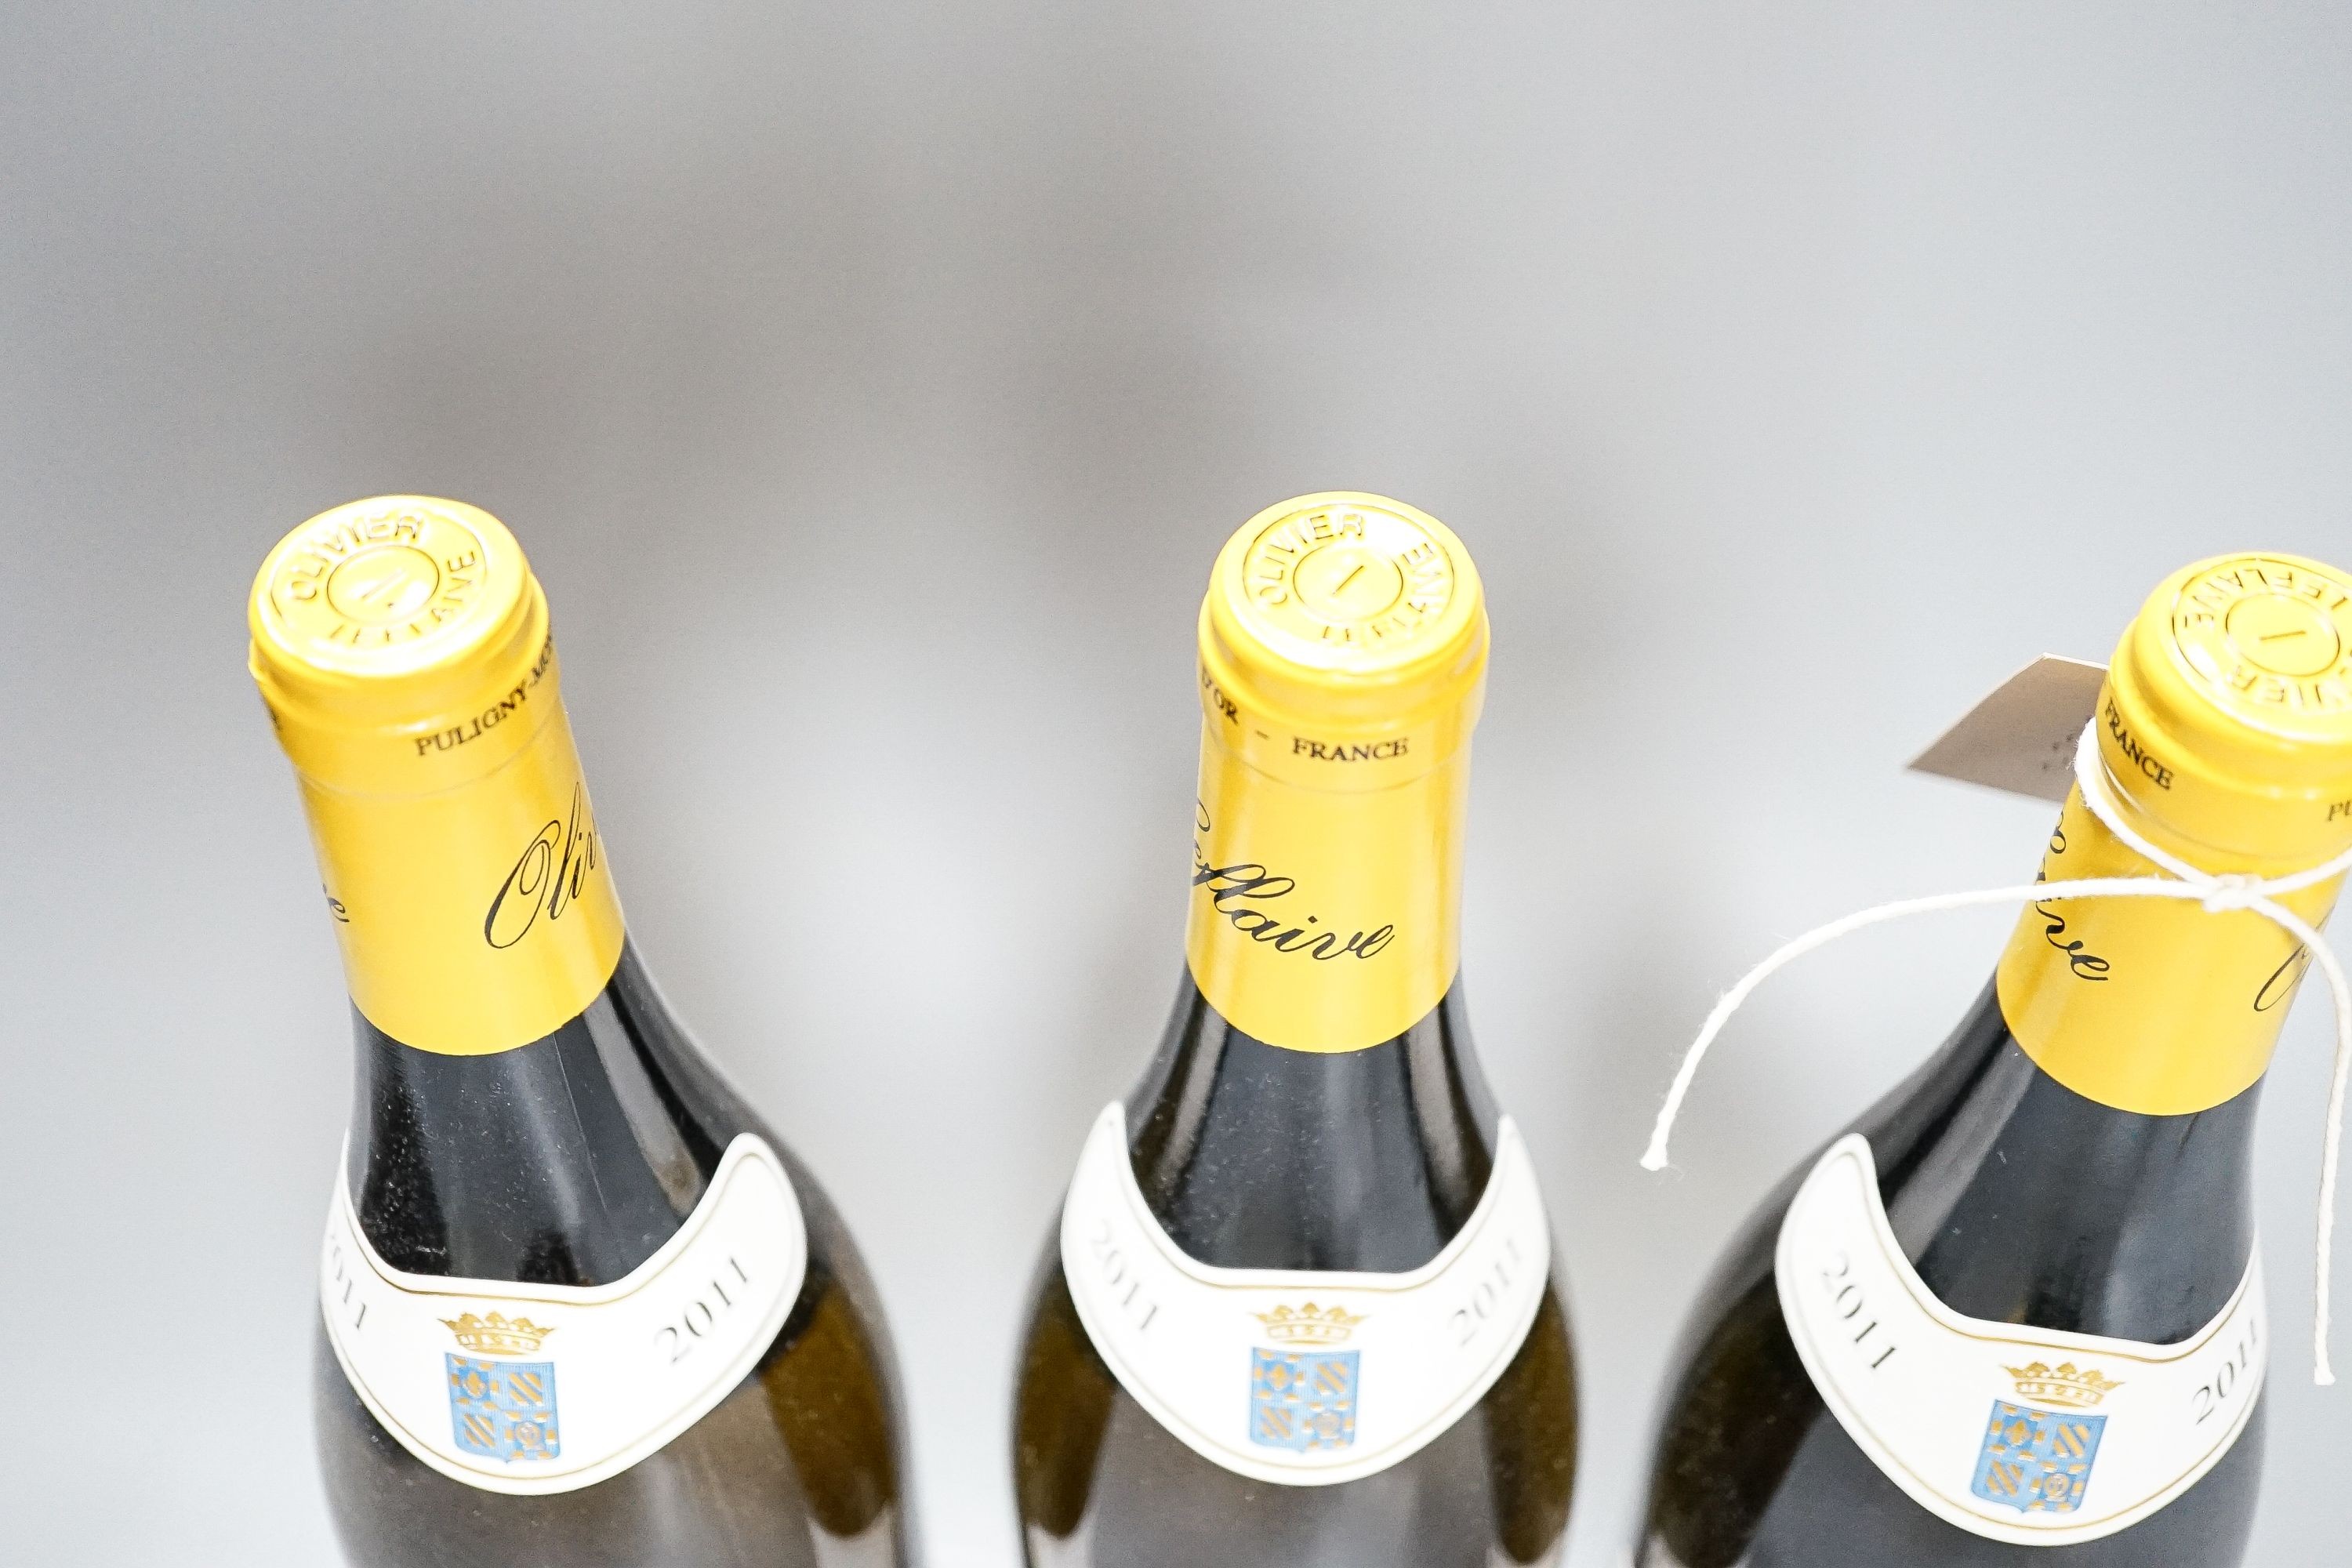 Three bottles of Olivier Leflaive Meursault, 2011, 75cl.